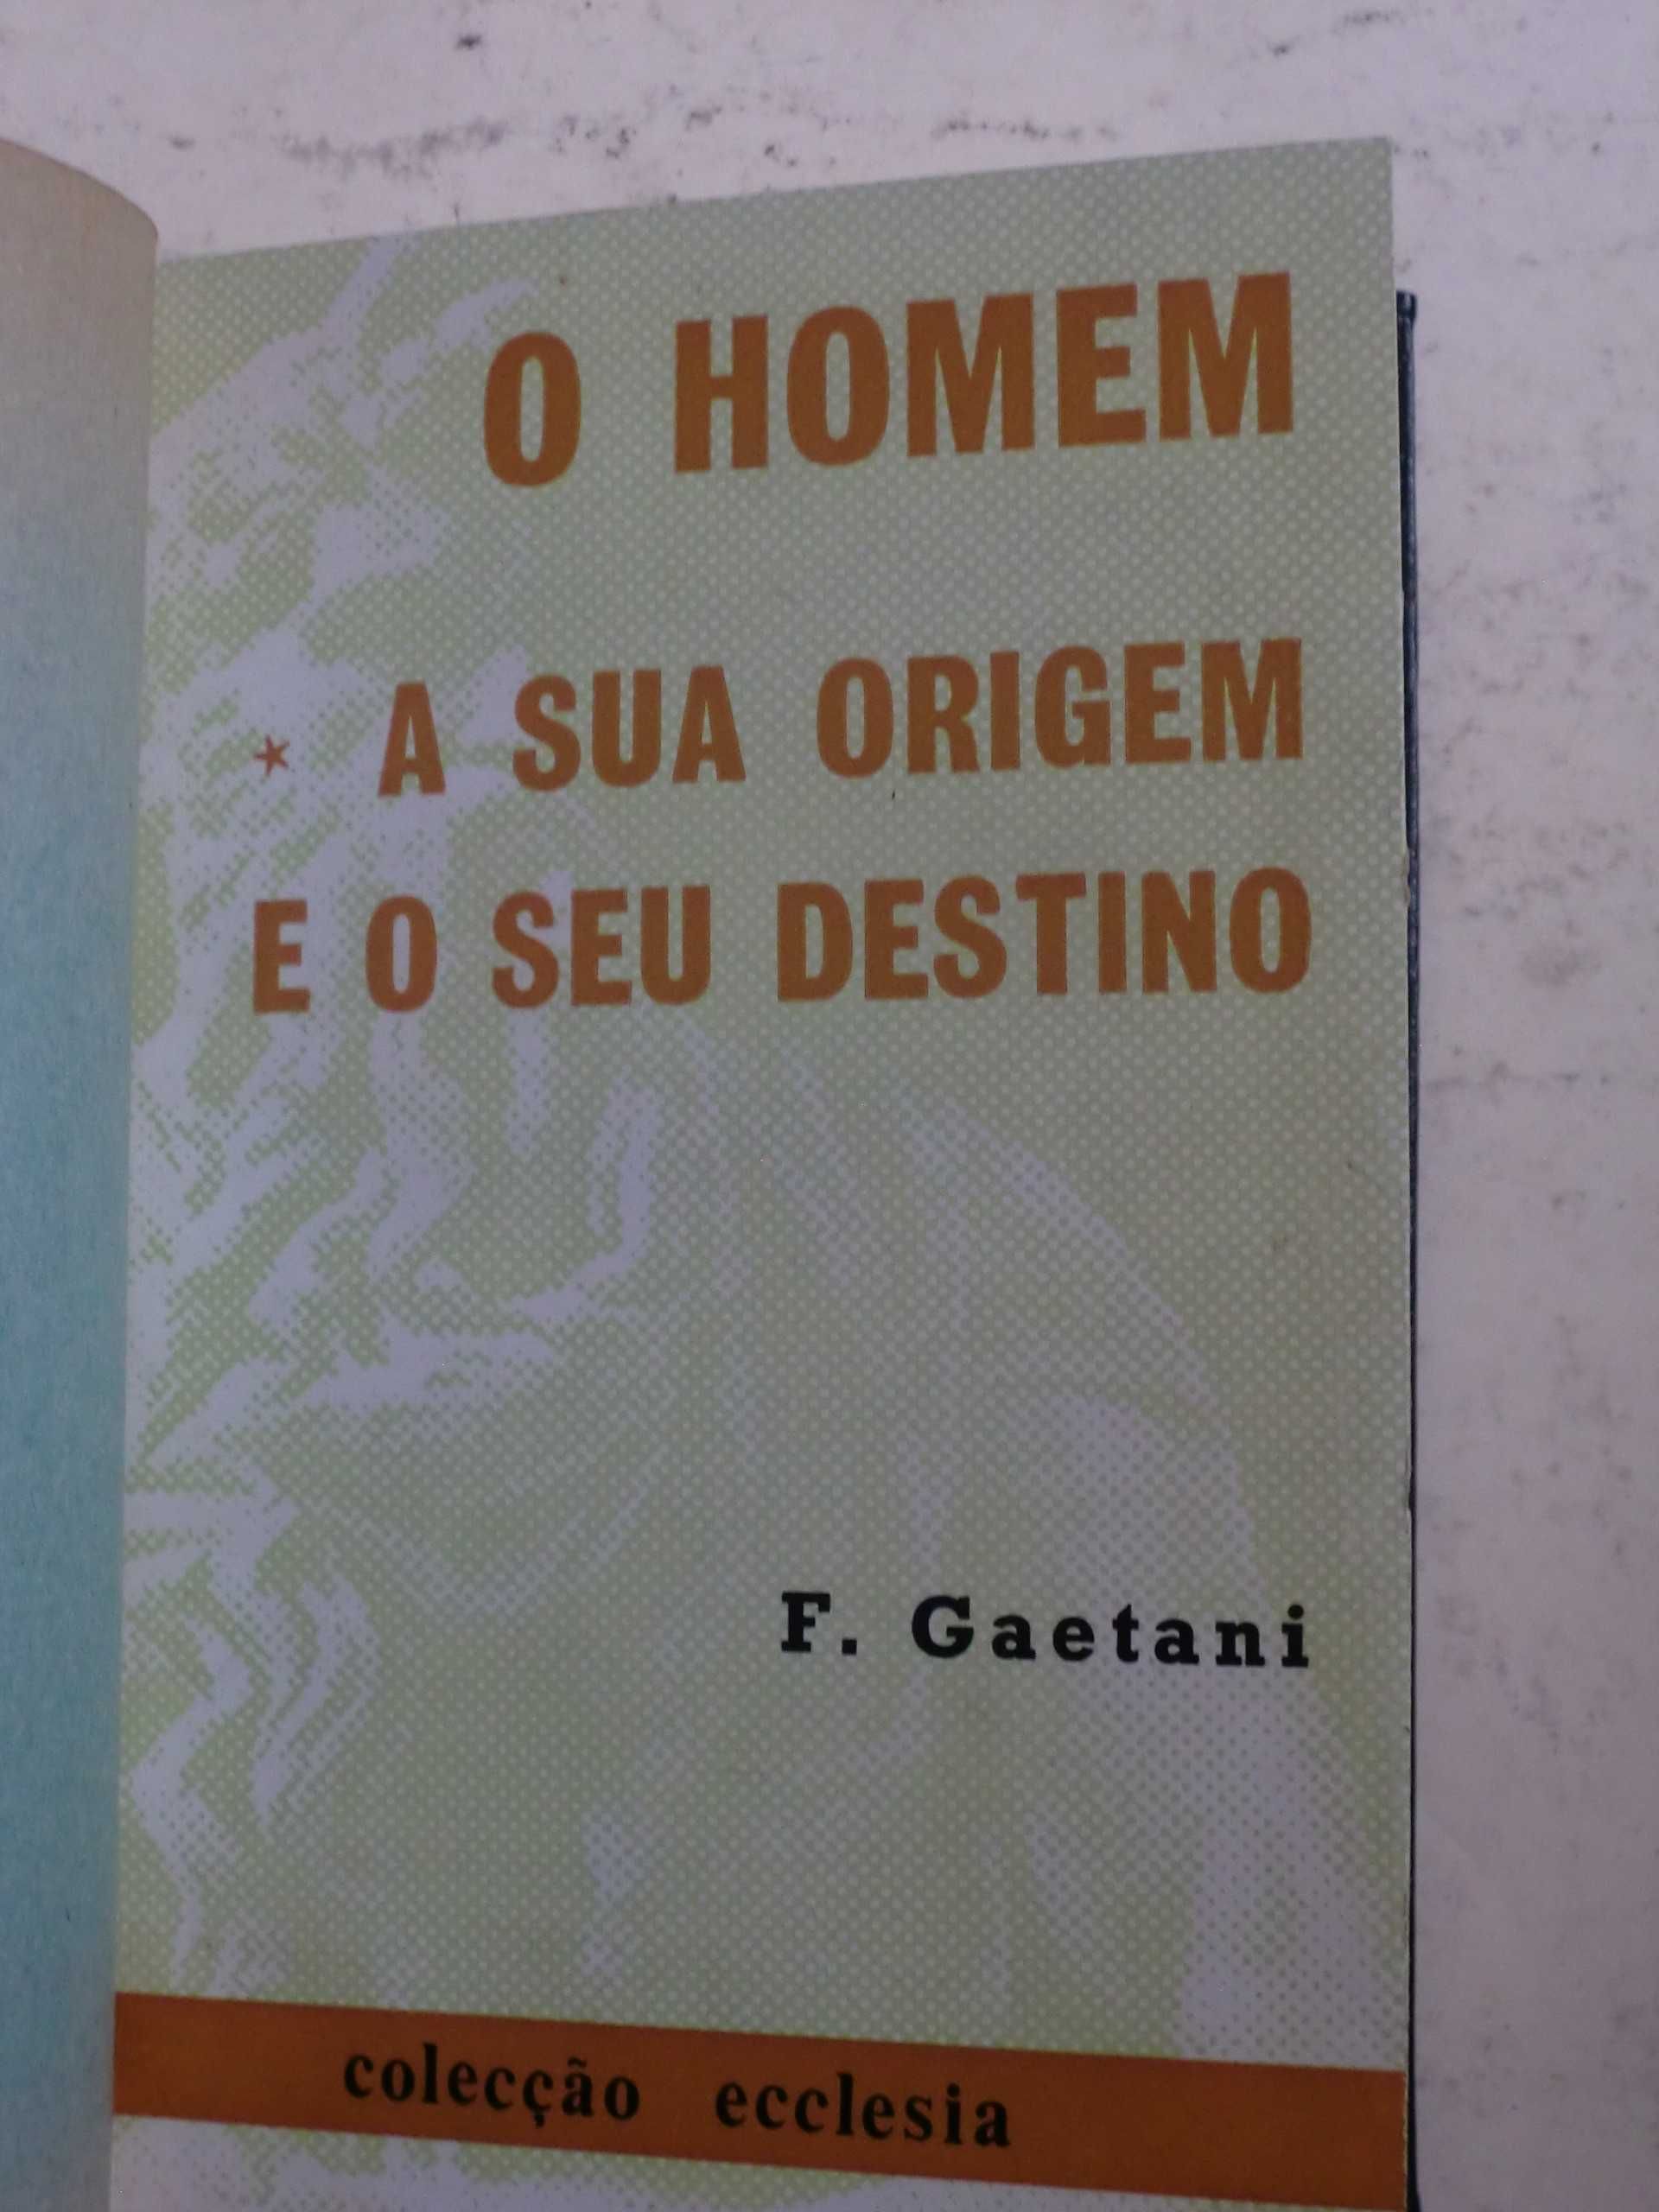 O Homem, a sua origem e o seu destino
de Francisco M. Gaetani